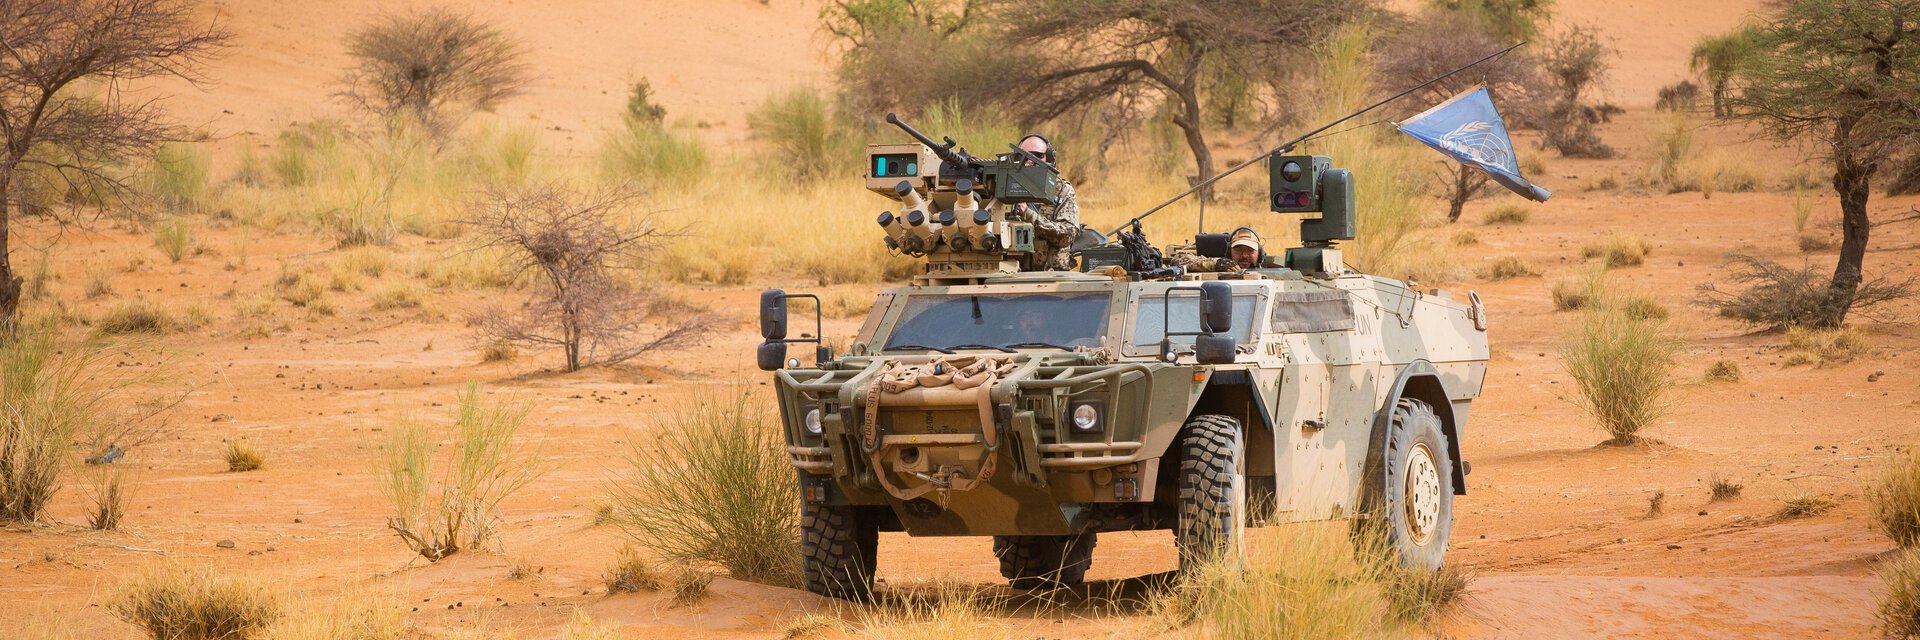 Ein gepanzertes Bundeswehrfahrzeug mit Antennen und Maschinengewehr steht im GelÃ¤nde